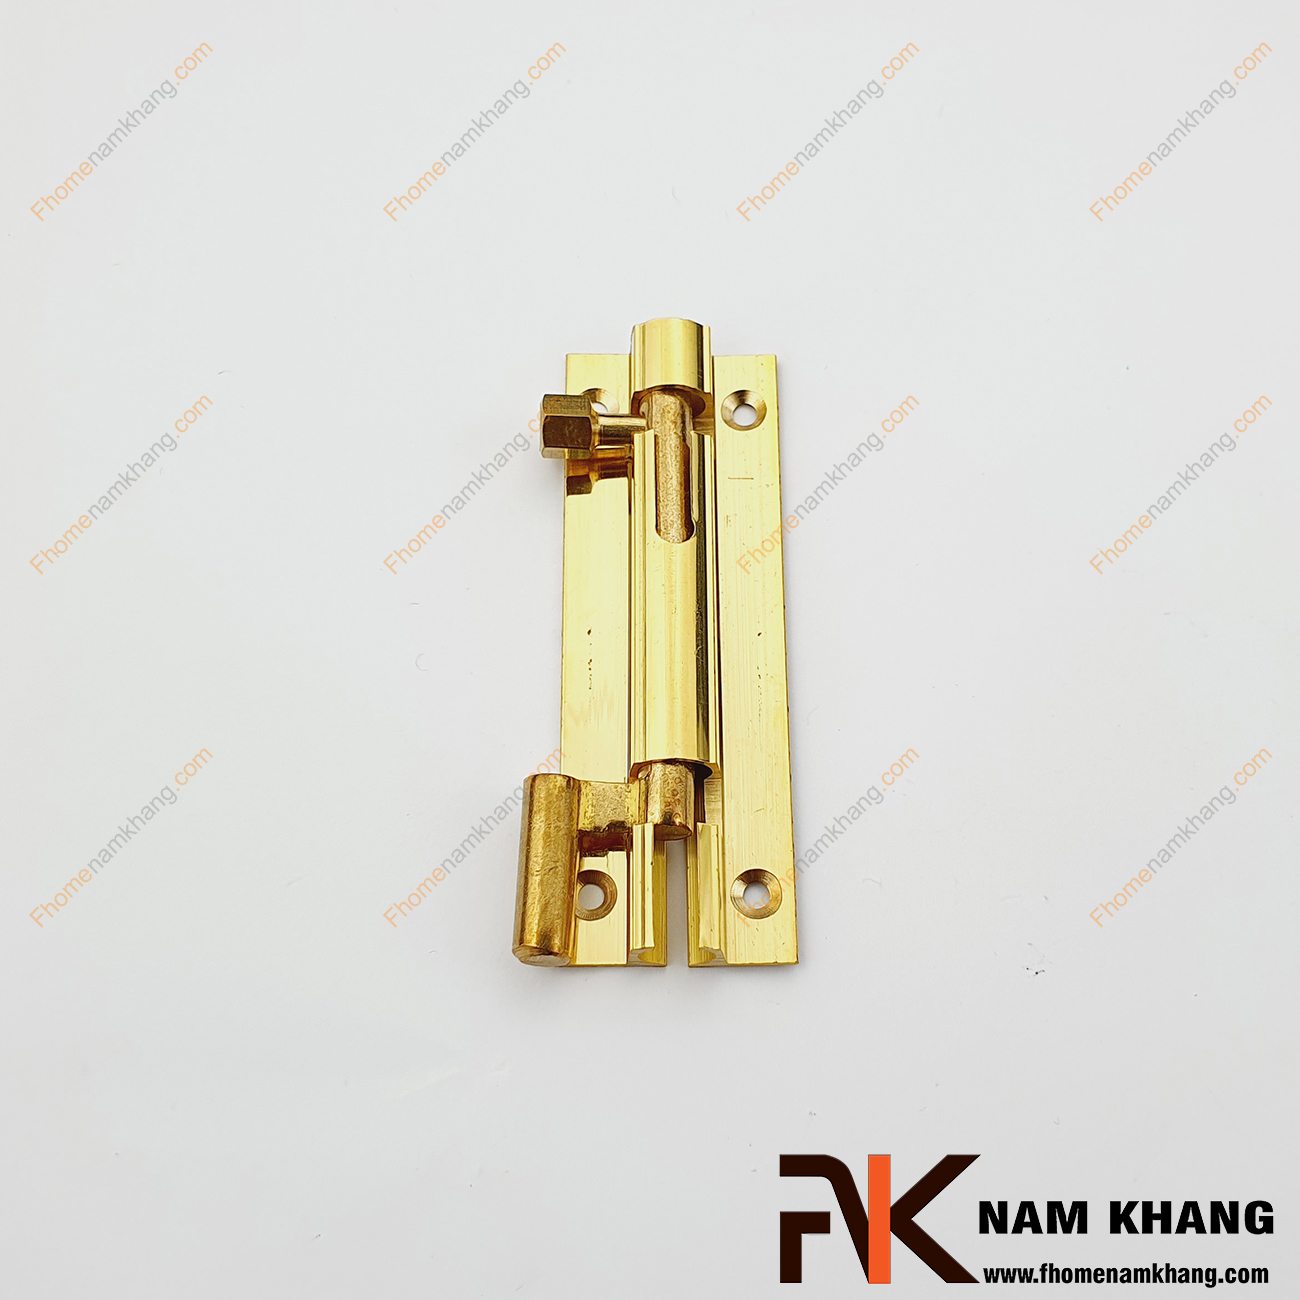 Chốt cửa bằng đồng màu đồng vàng NKC002-DV là một dạng phụ kiện thường dùng trên các dạng cánh cửa tủ và cửa chính với mục đích khóa giữ cách cửa thông qua cơ cấu khóa đơn giản.